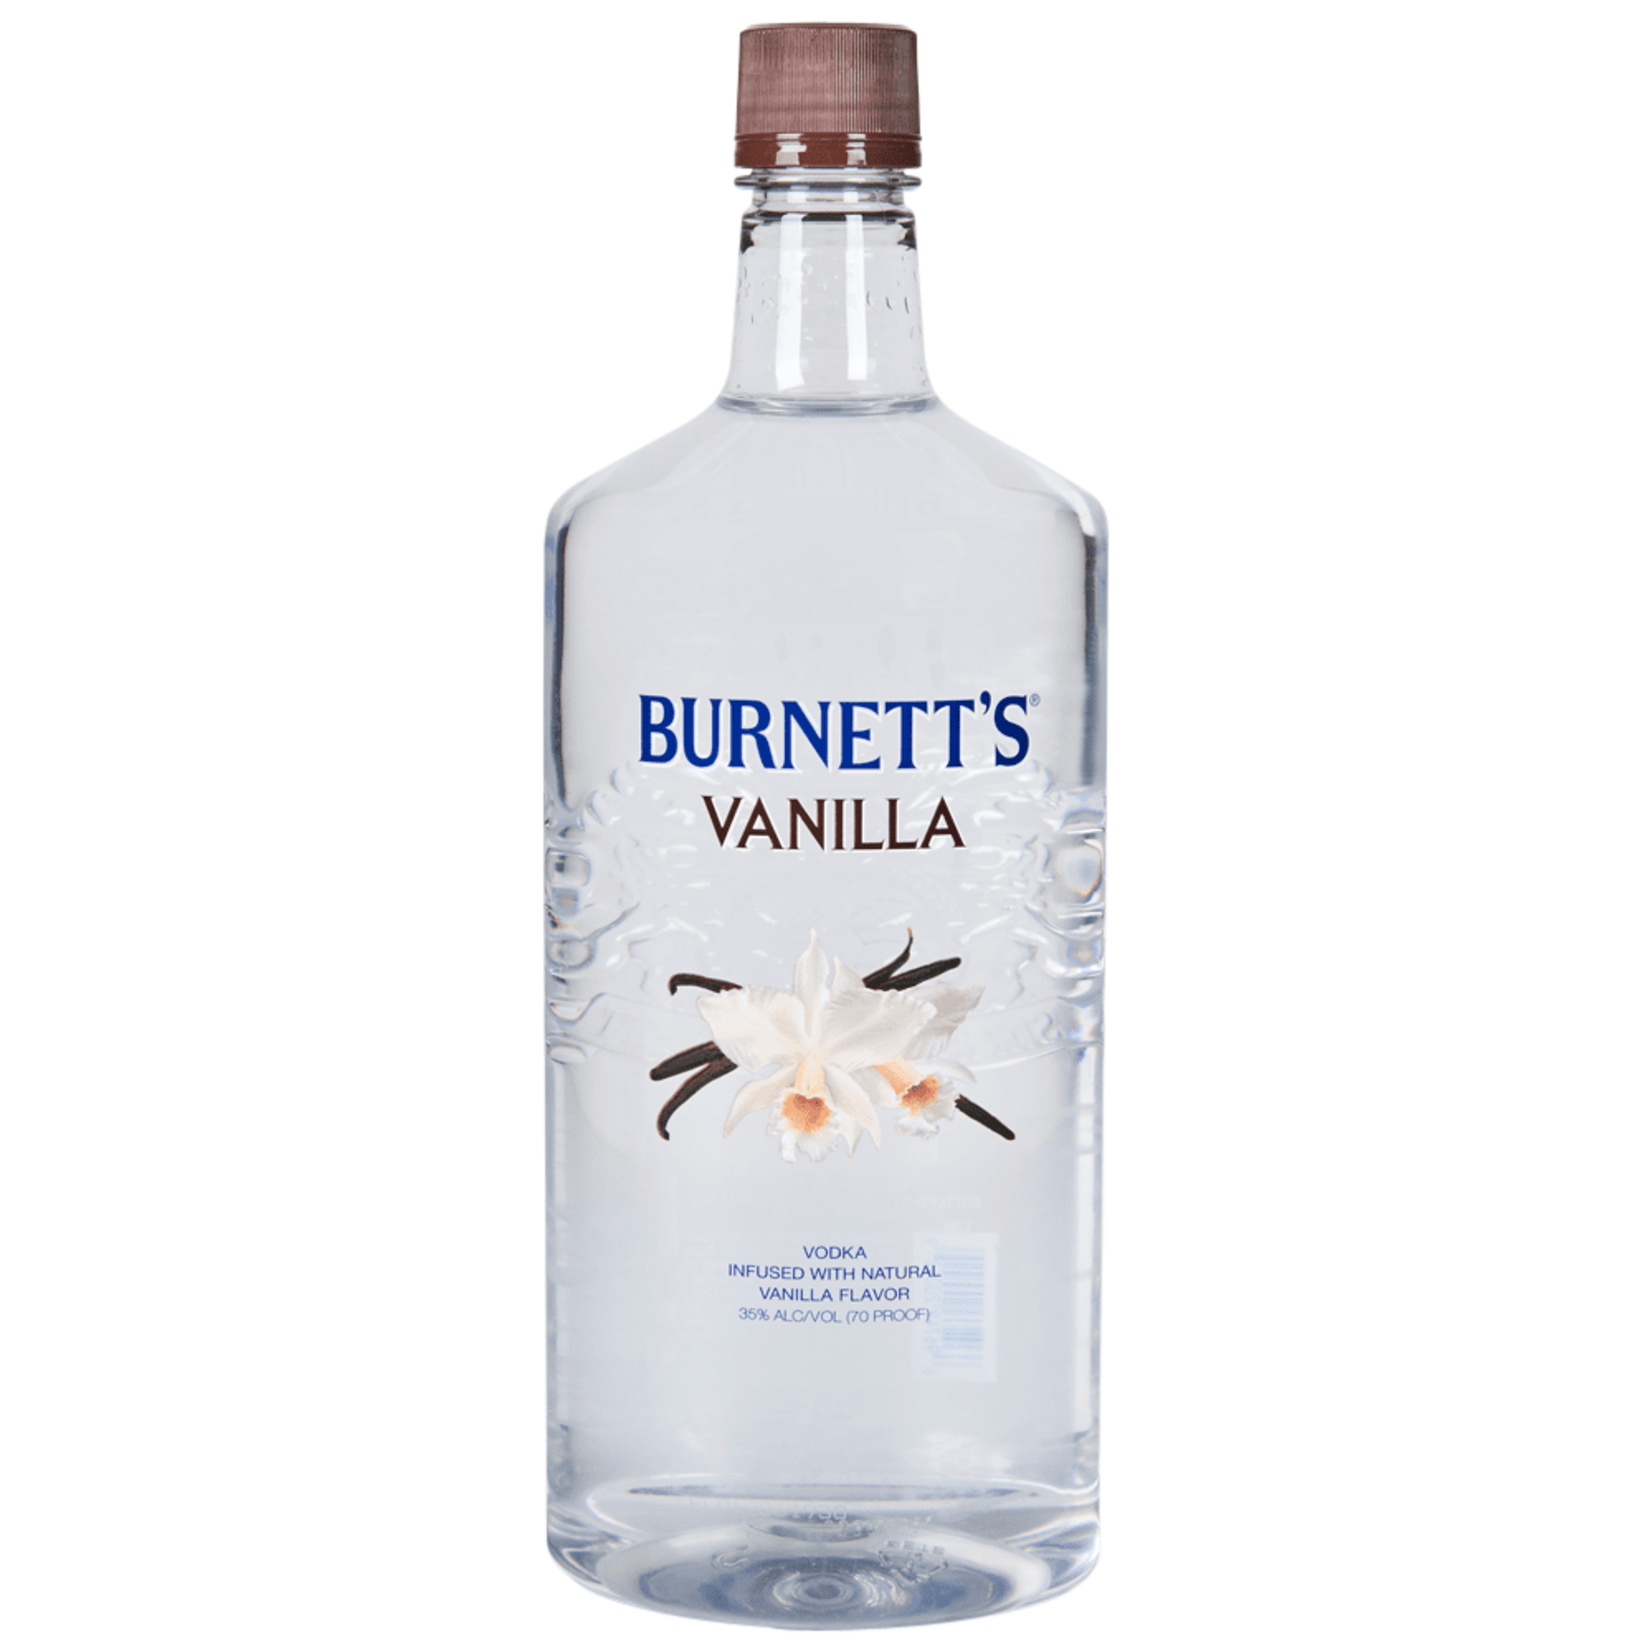 Burnetts Burnetts Vodka Vanilla 1.75 L